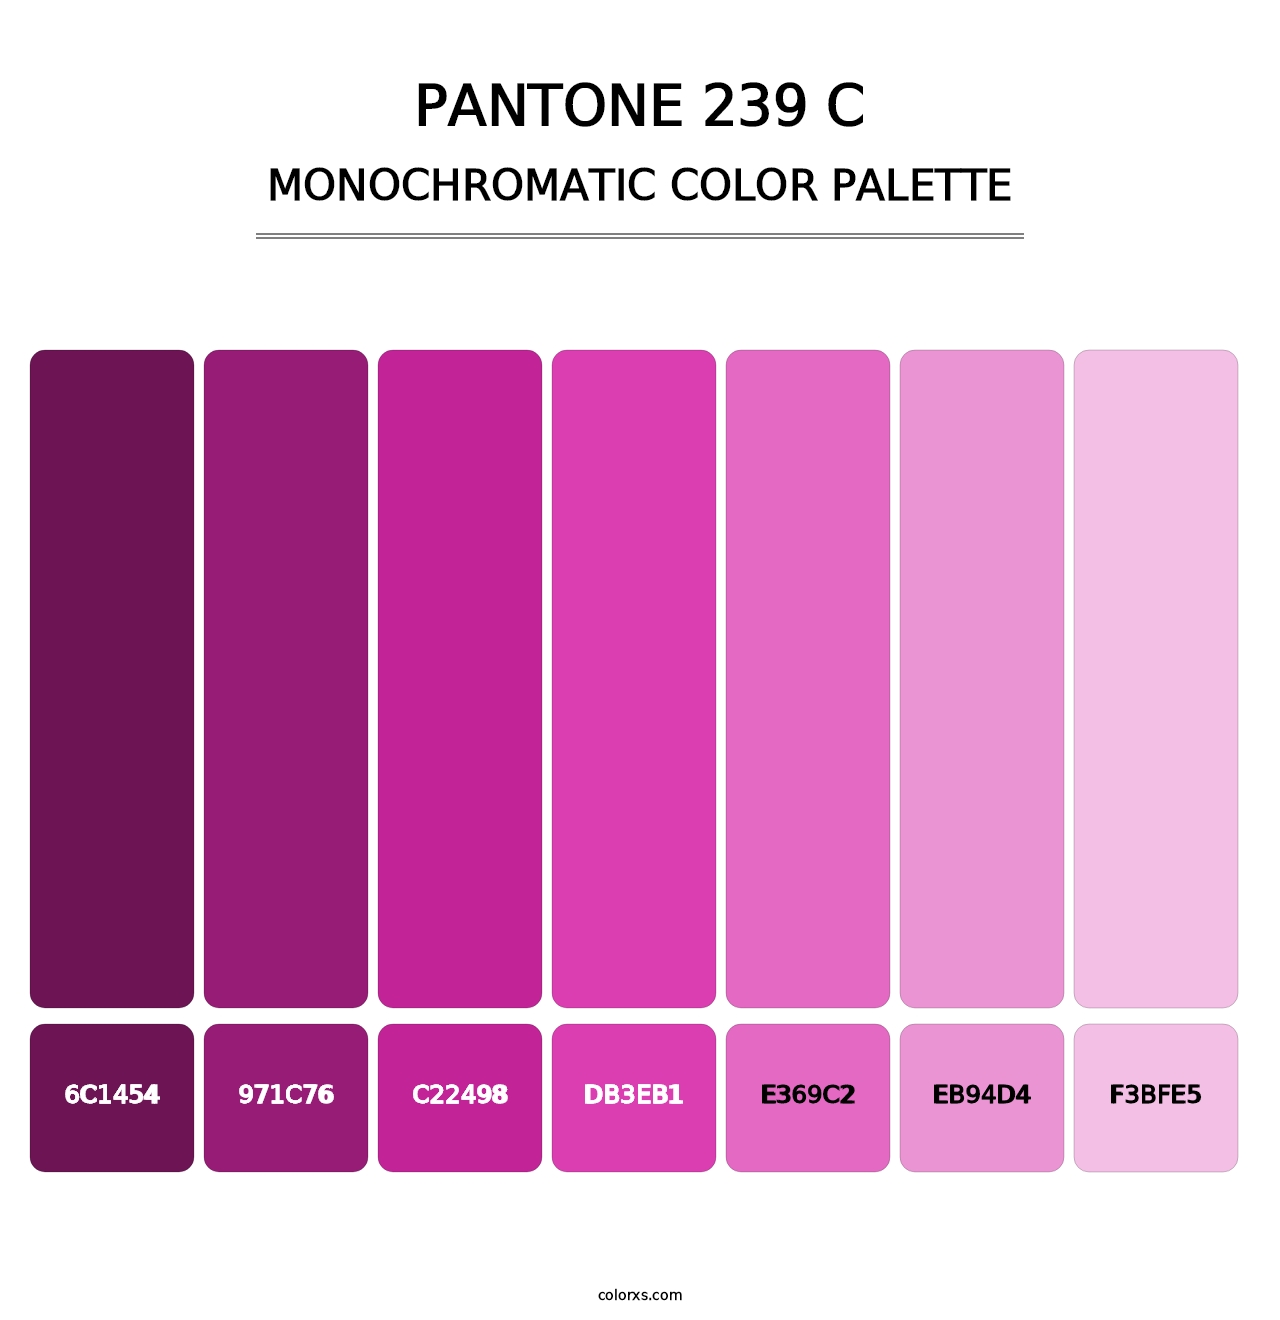 PANTONE 239 C - Monochromatic Color Palette